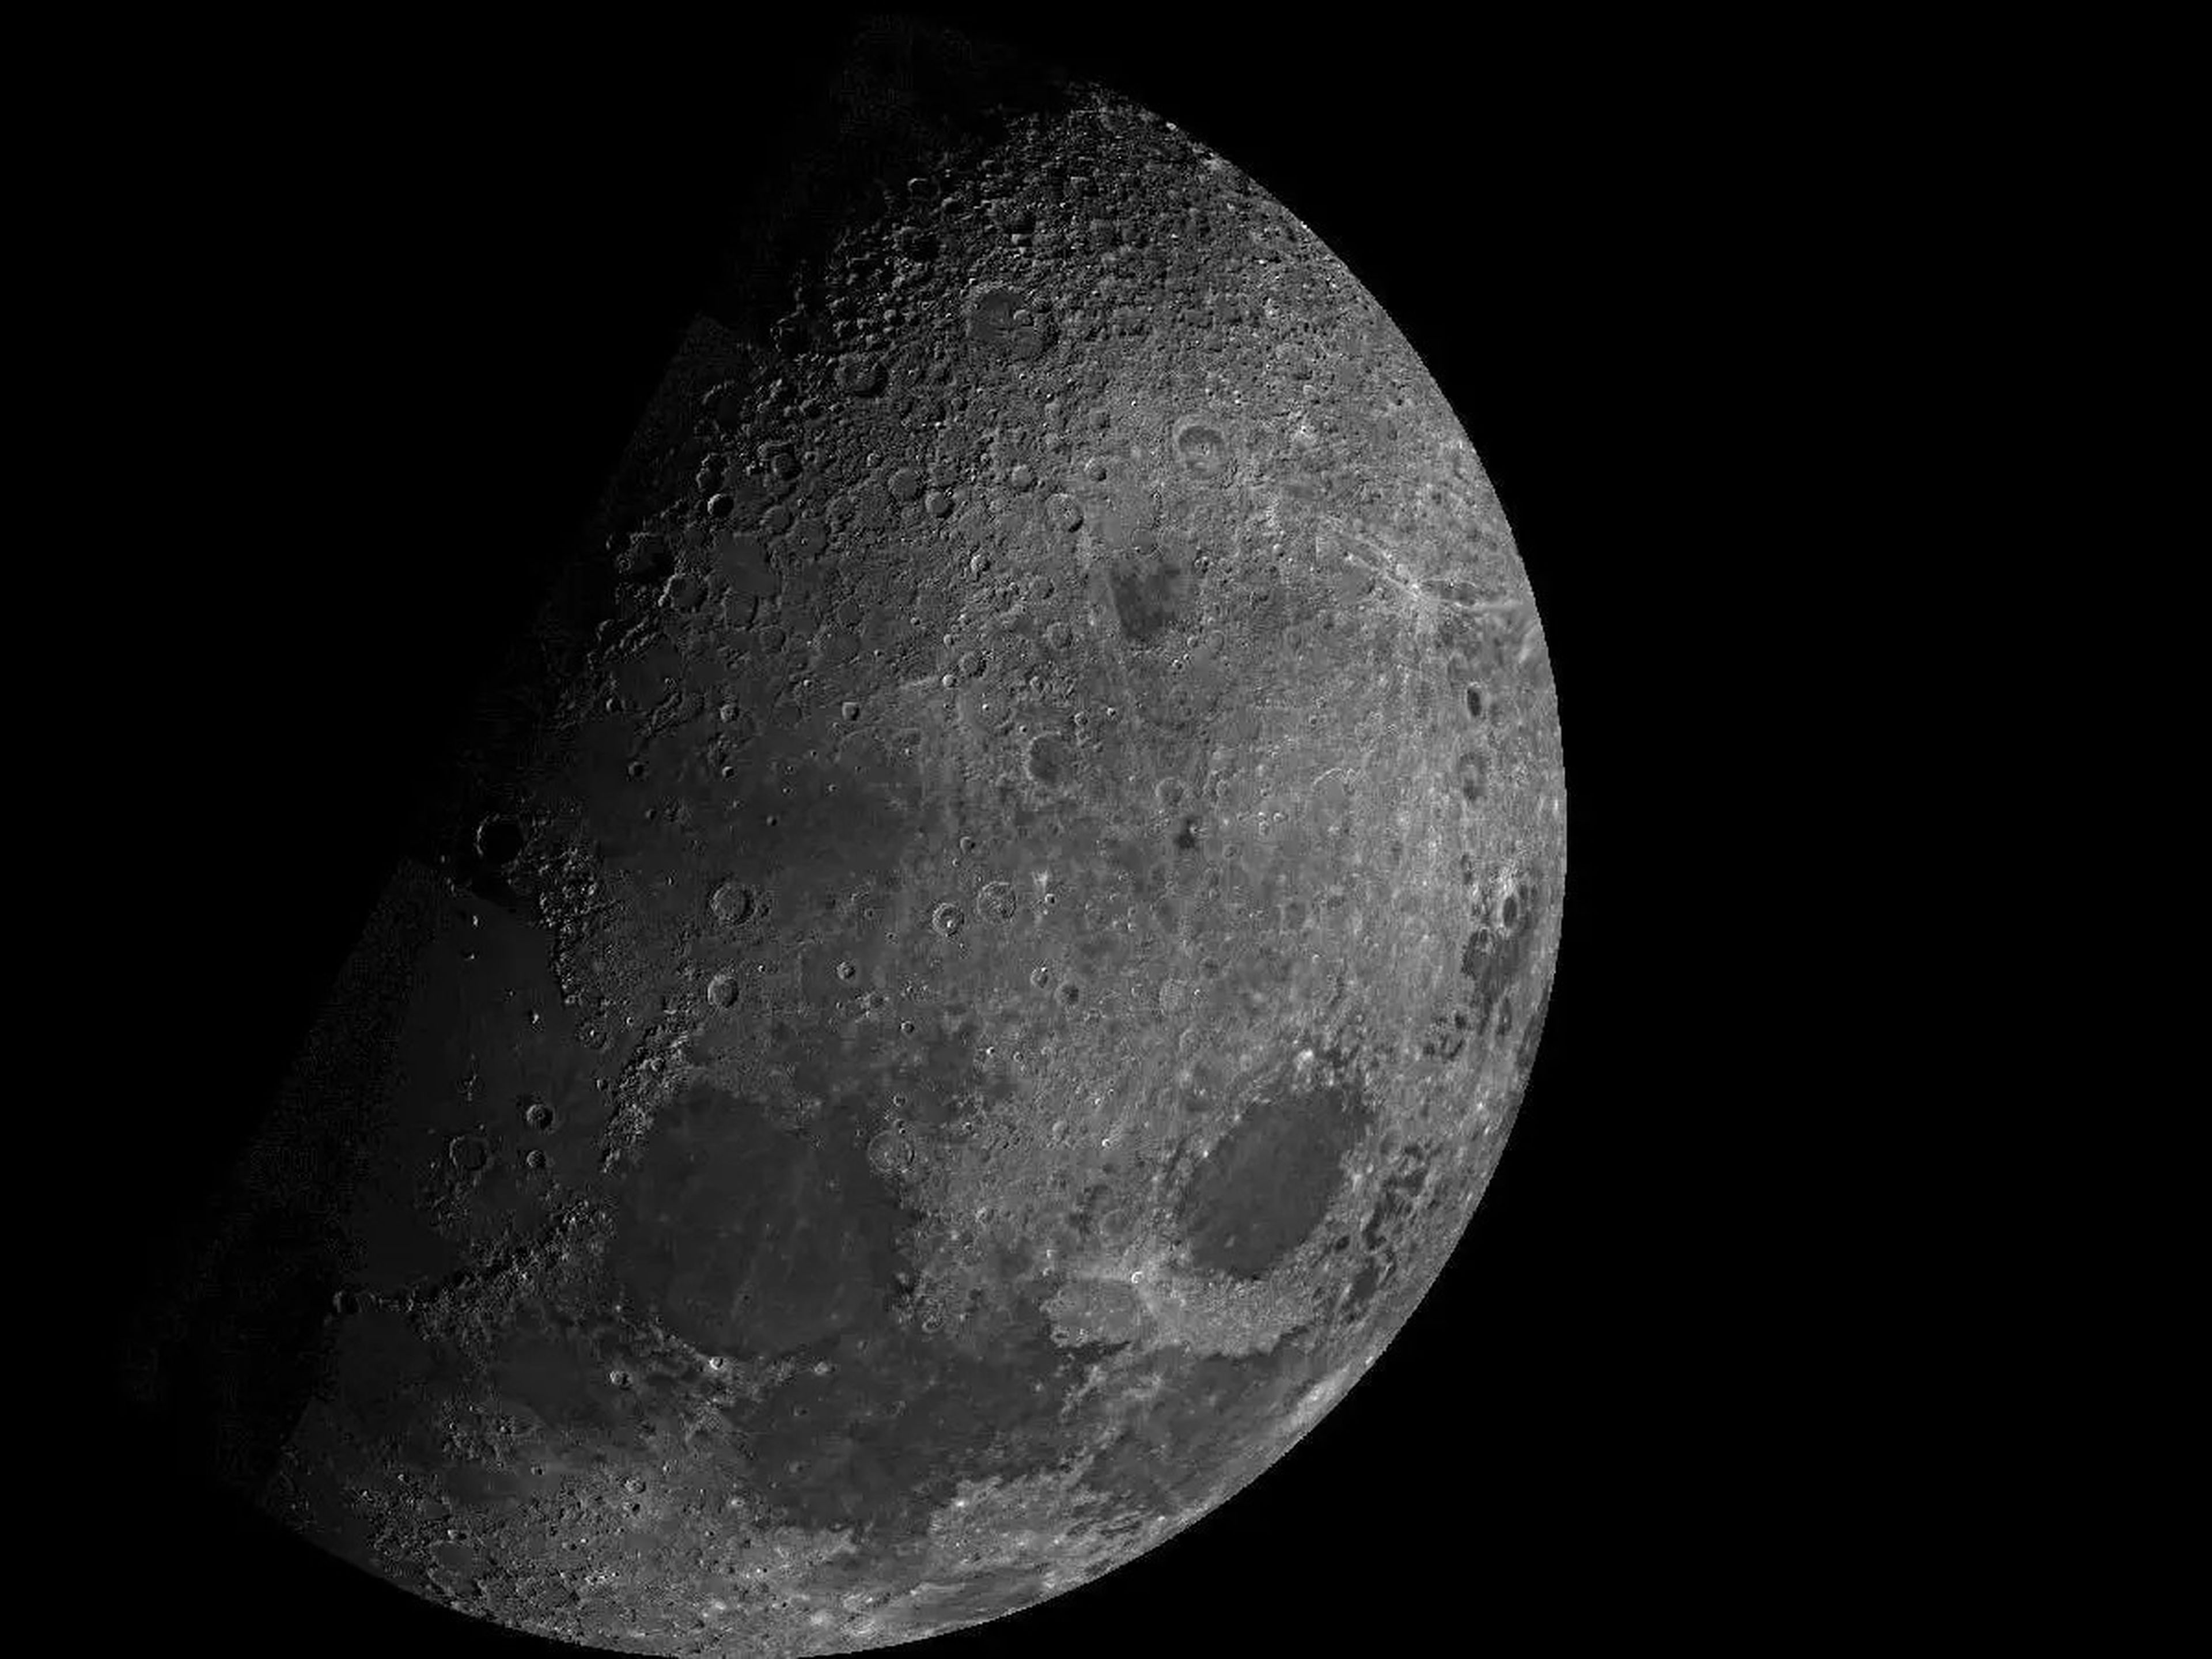 La luna vista por la sonda Mariner 10 de la NASA en 1973.